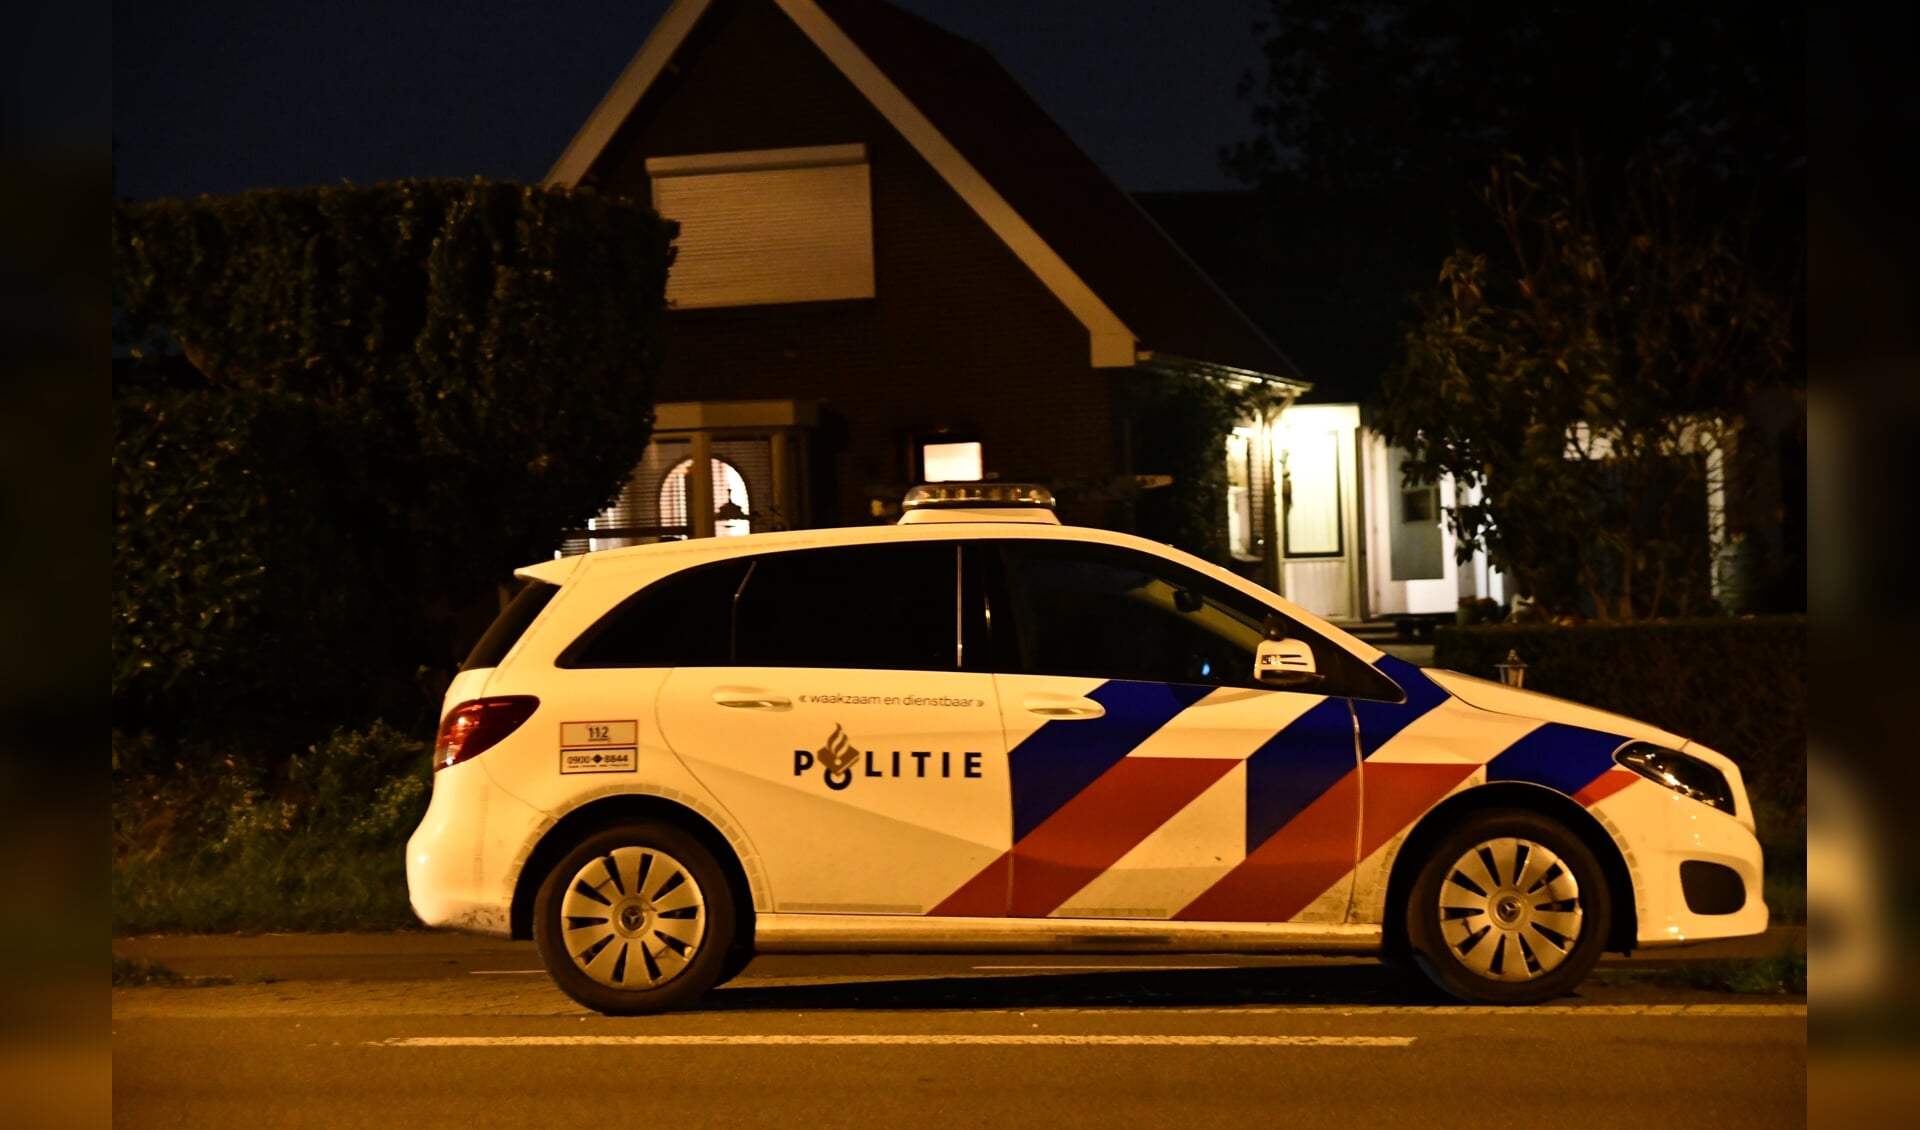 De politie was snel ter plaatse na een inbraakmelding aan de Nijkerkerstraat.